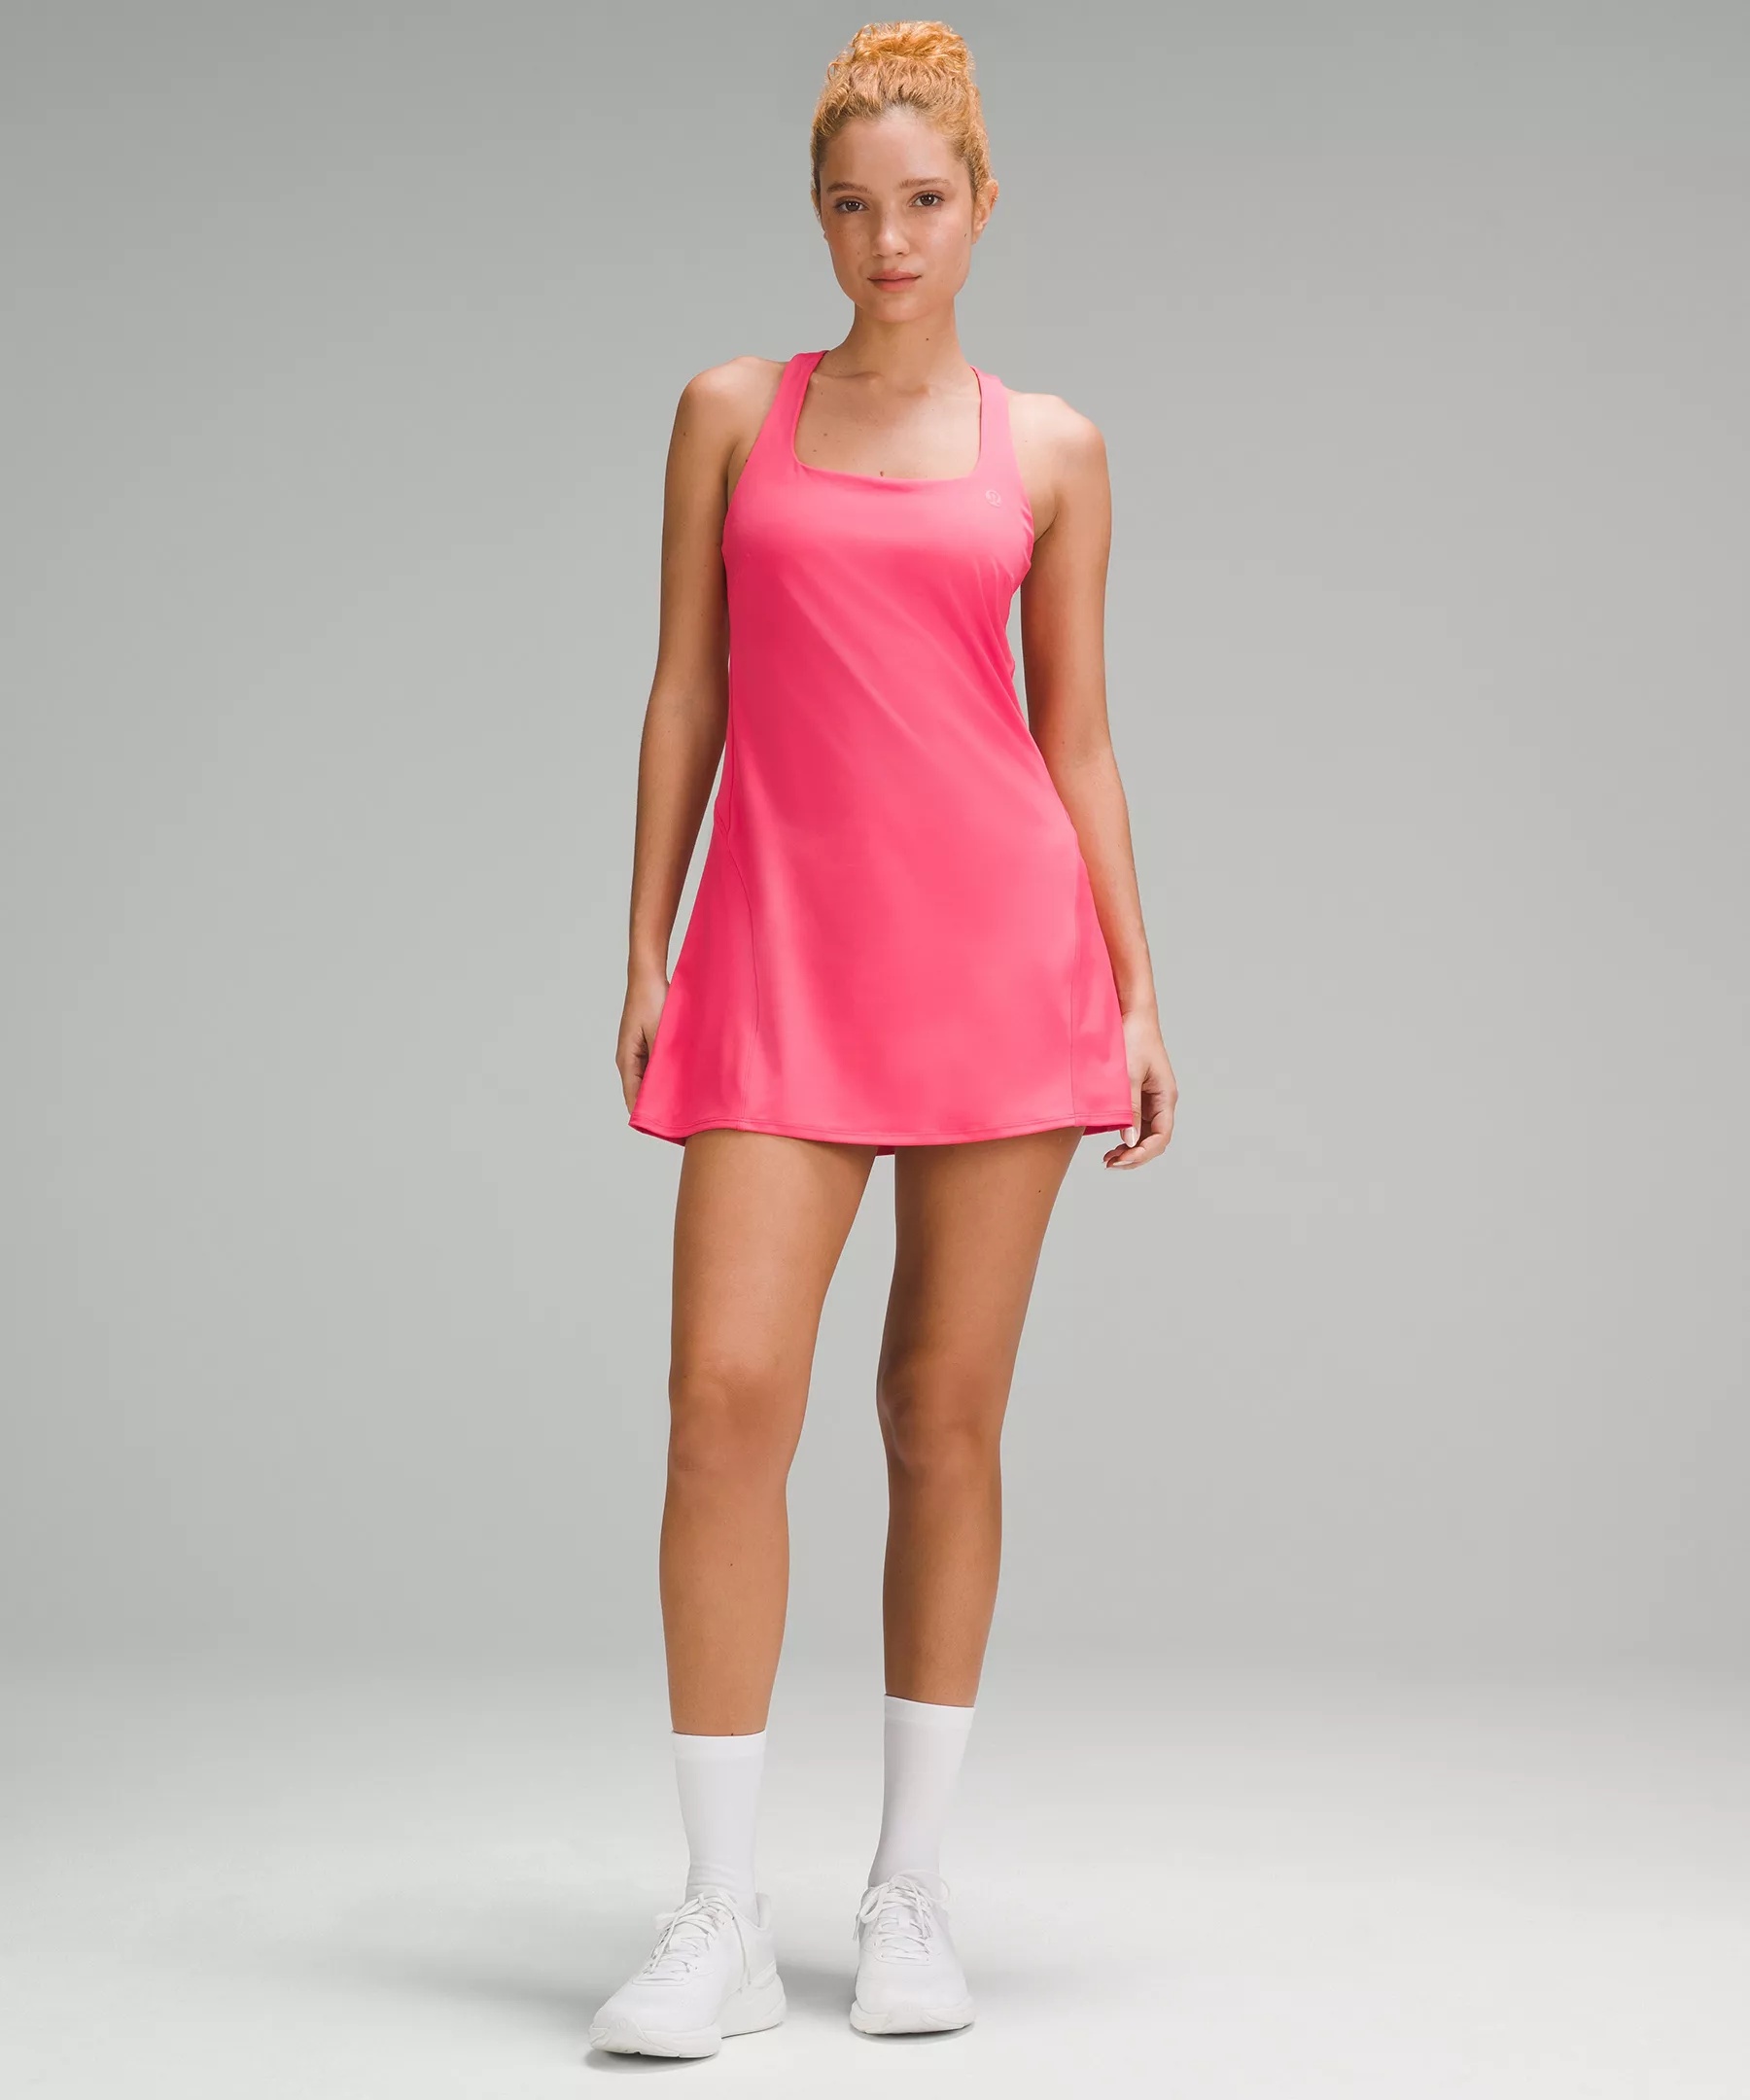 Lightweight Linerless Tennis Dress - 1